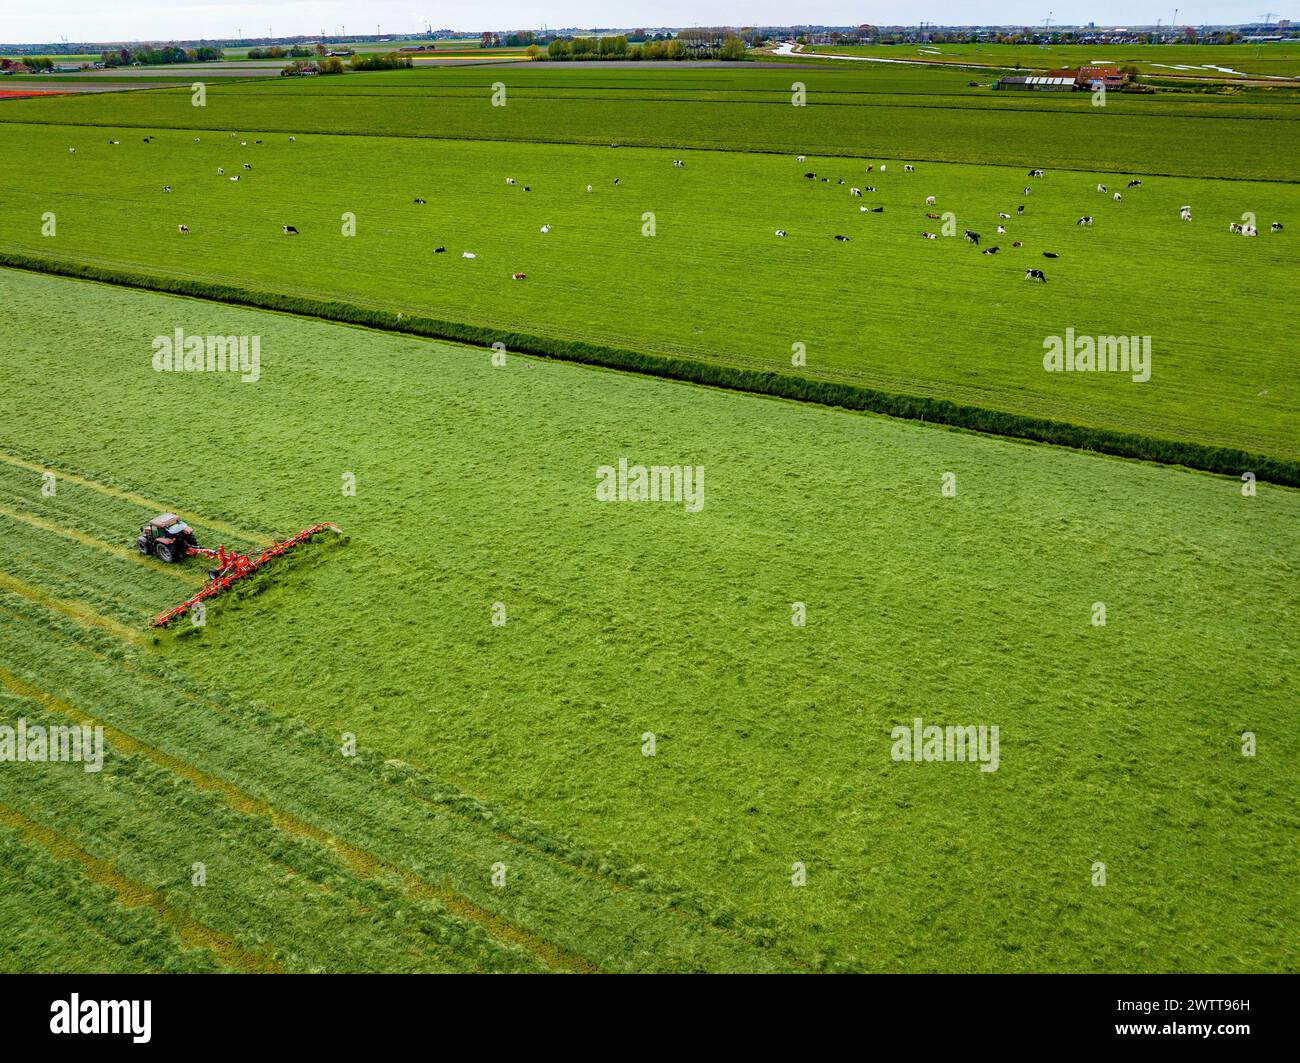 Vista aérea de un tractor cortando exuberantes campos verdes con vacas de pastoreo Foto de stock